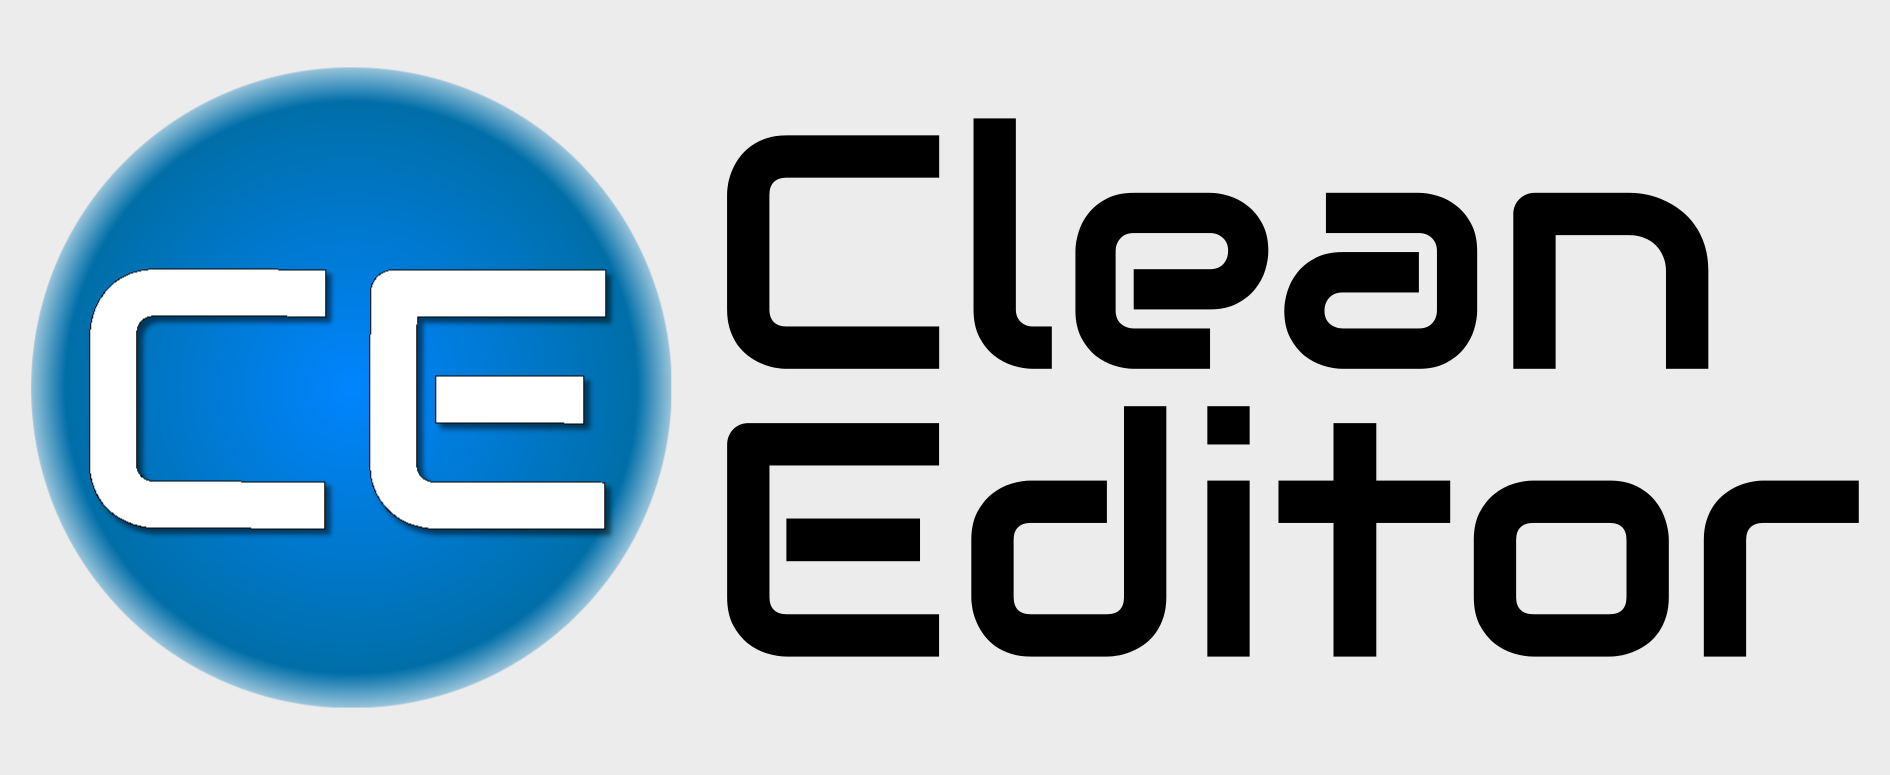 clean editor logo